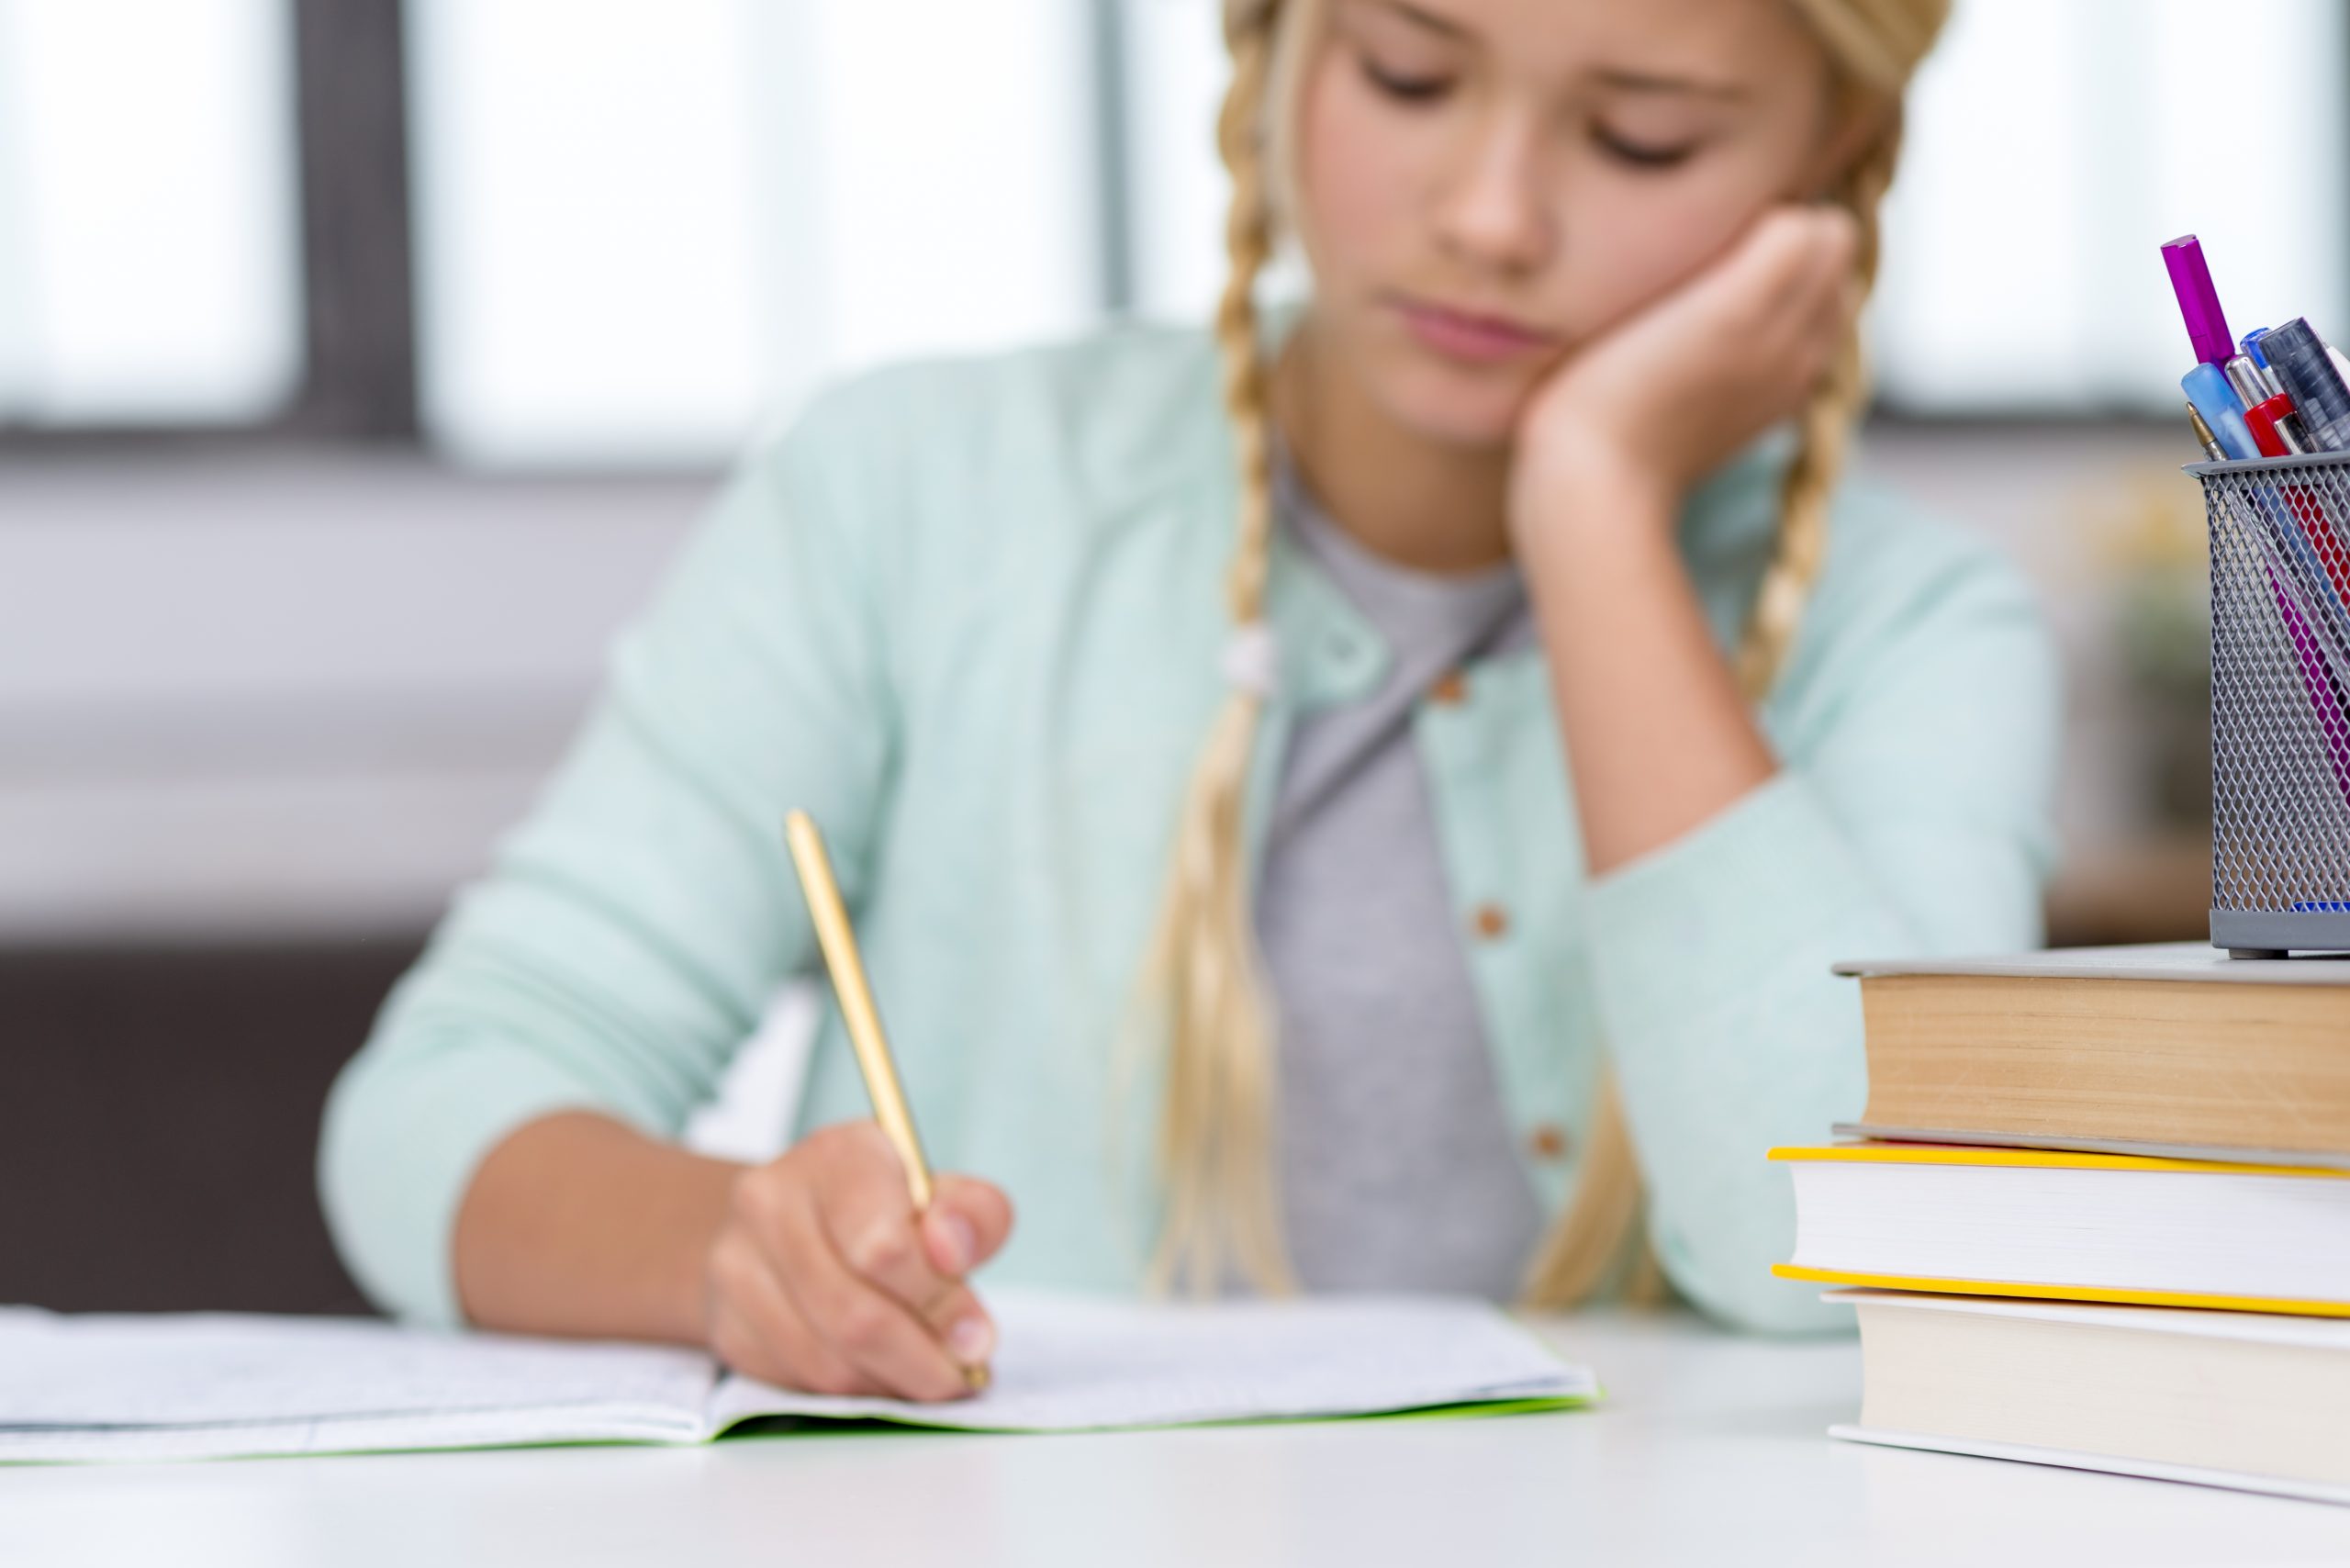 Schritte zur Erfolgsaussicht: Mündliche Noten verbessern als introvertierter Schüler